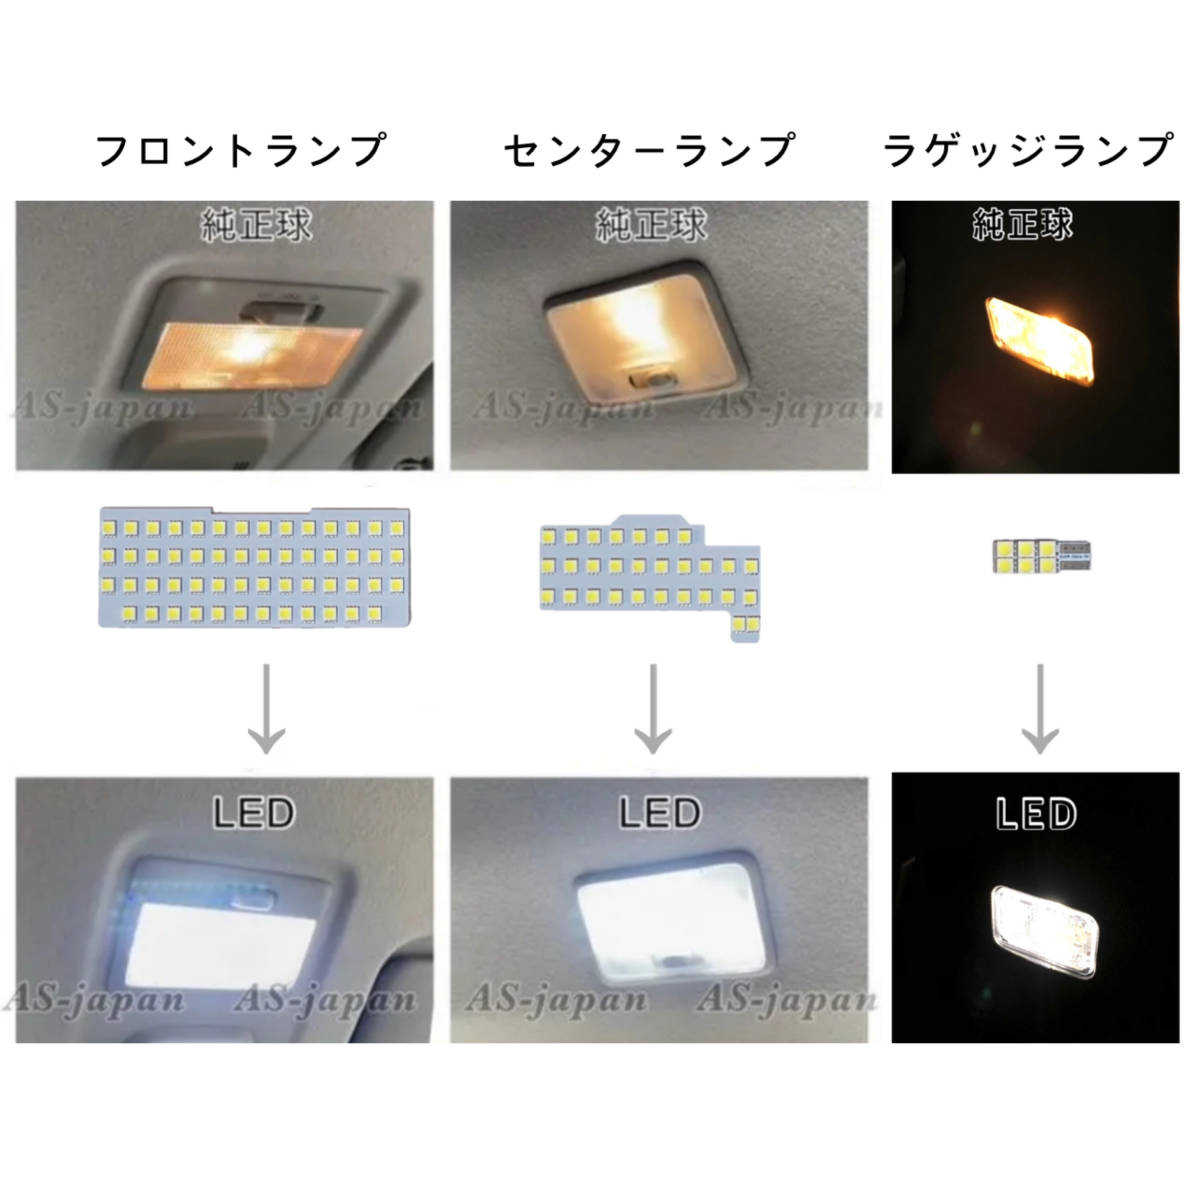 スズキ スペーシア / スペーシアカスタム [ MK53S ] 専用設計 LED ルームランプ 純白光 高輝度 SMD 2017(H29)年12月〜